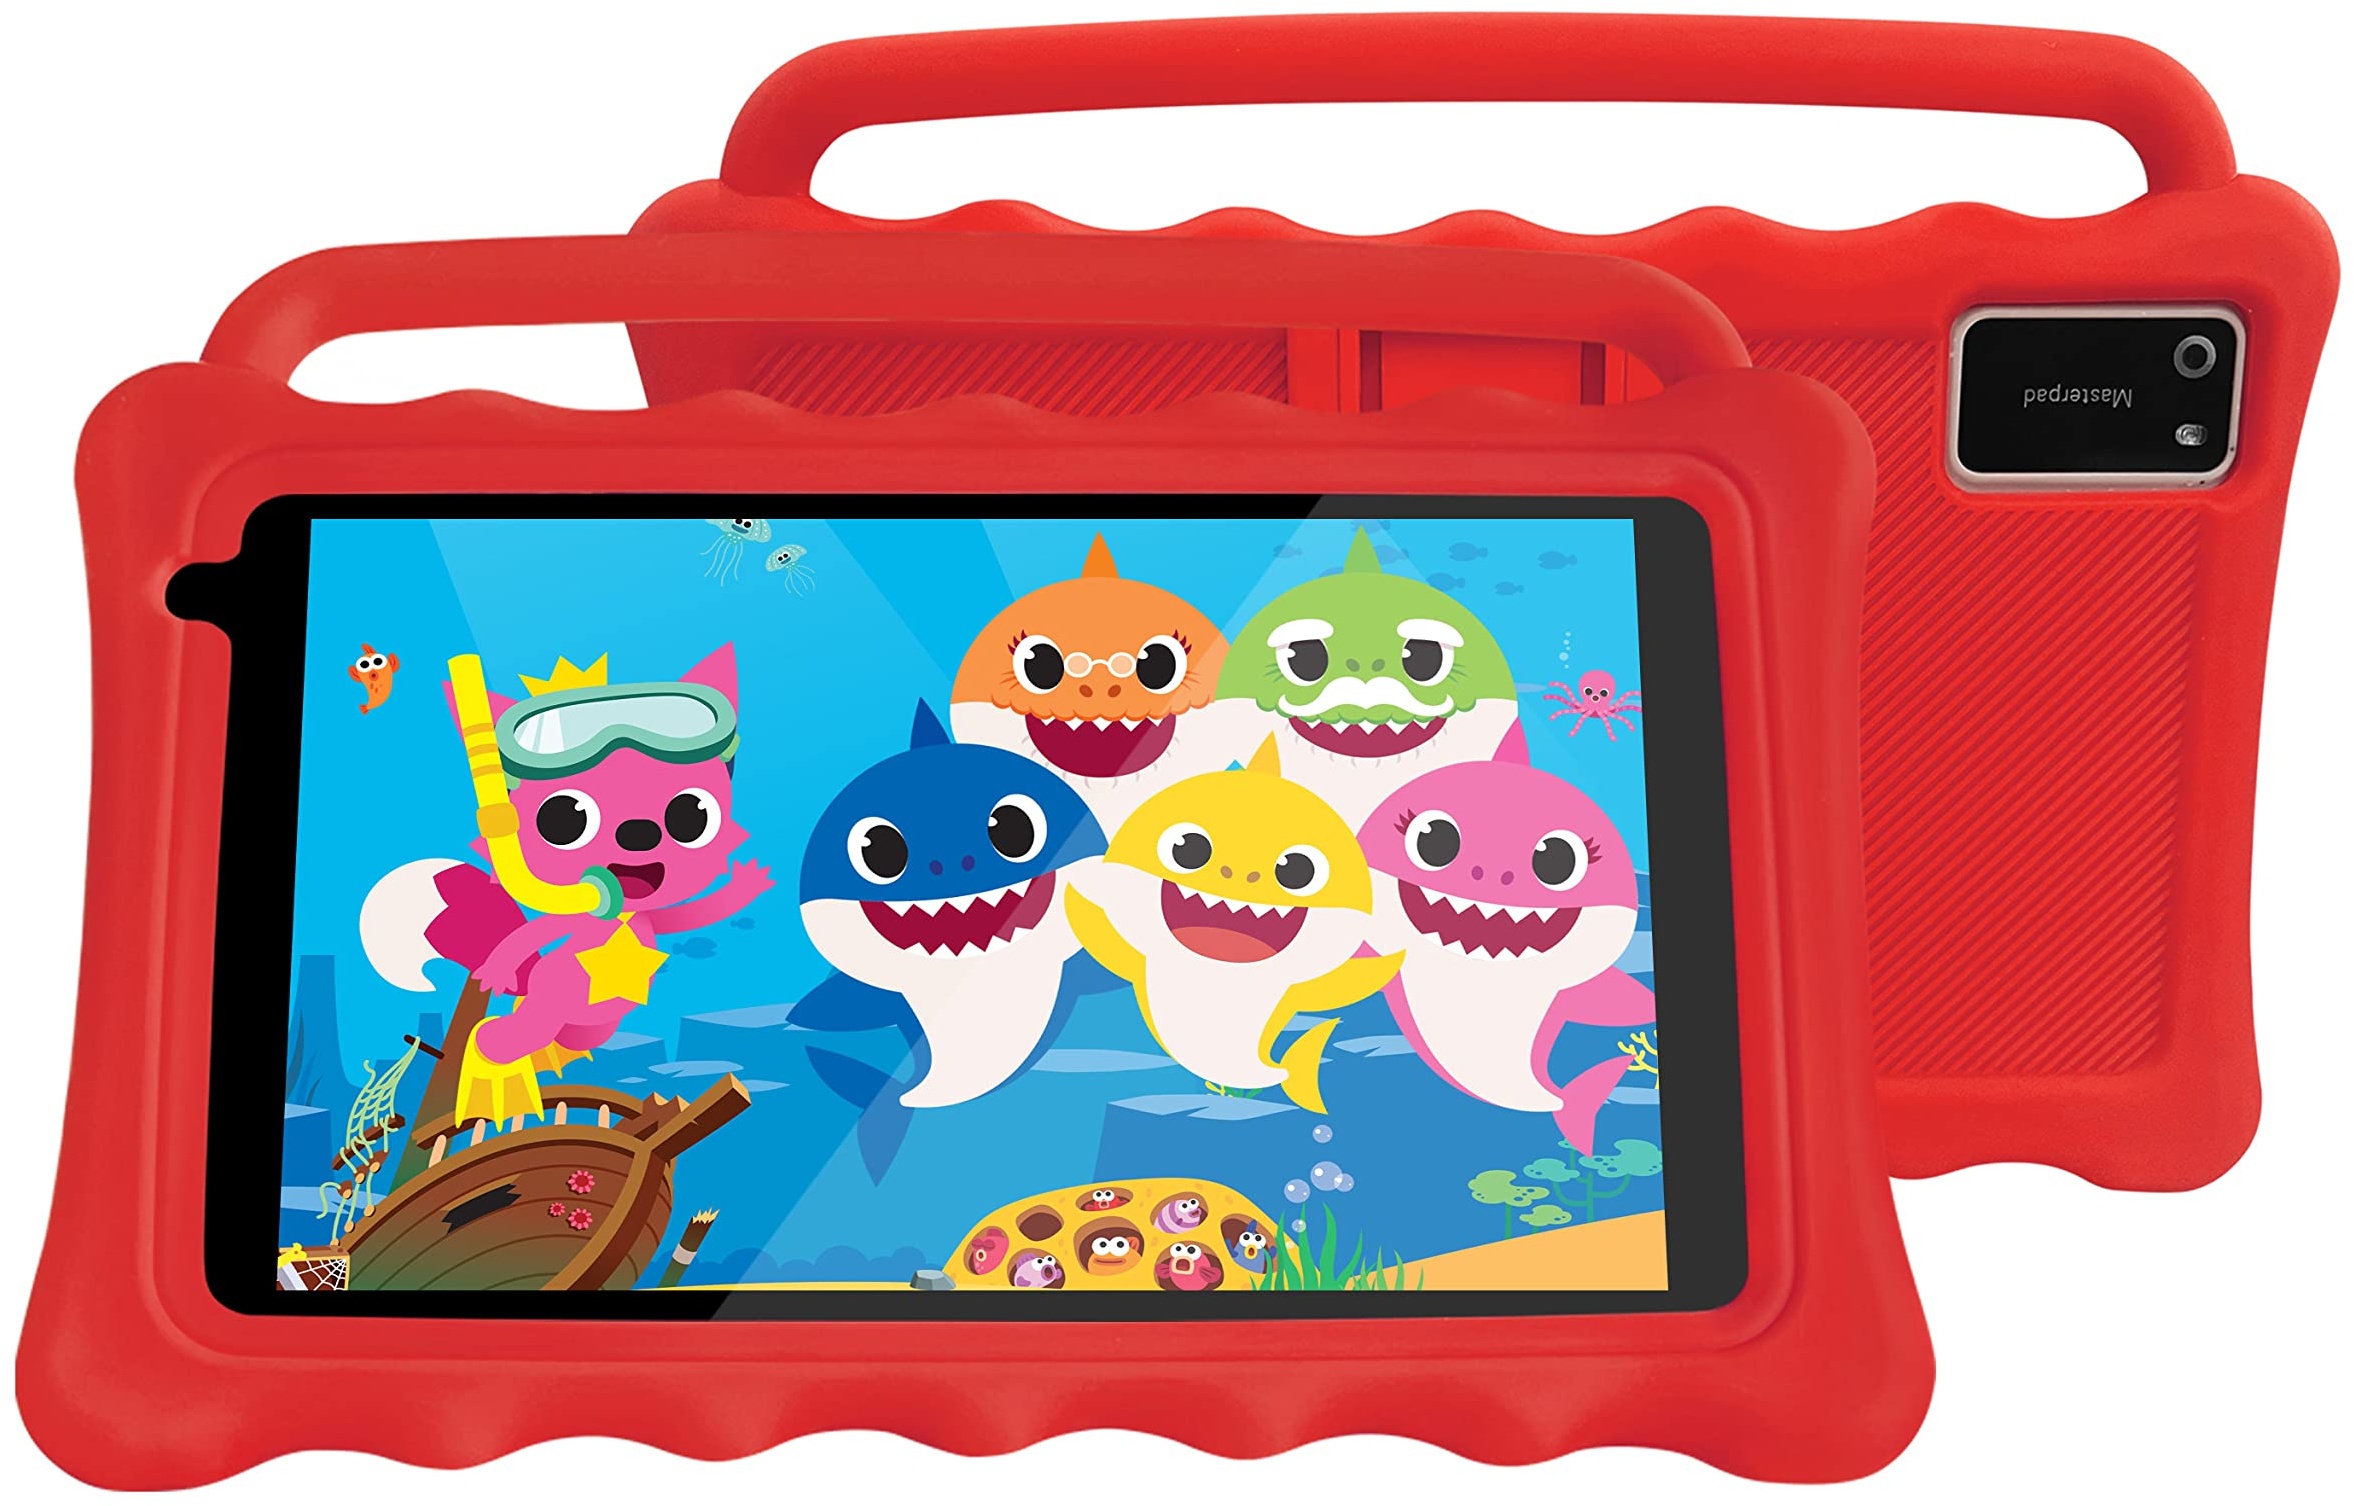 BYYBUO 7 Kinder Tablet ab 3 Jahren, 1920x1200 Full HD Display 7 Zoll Tablet für Kinder, 2+32 GB Kindersicherungsmodus WiFi Kids Tablet mit kinderfreundlicher Hülle für Kids Edition (Red)